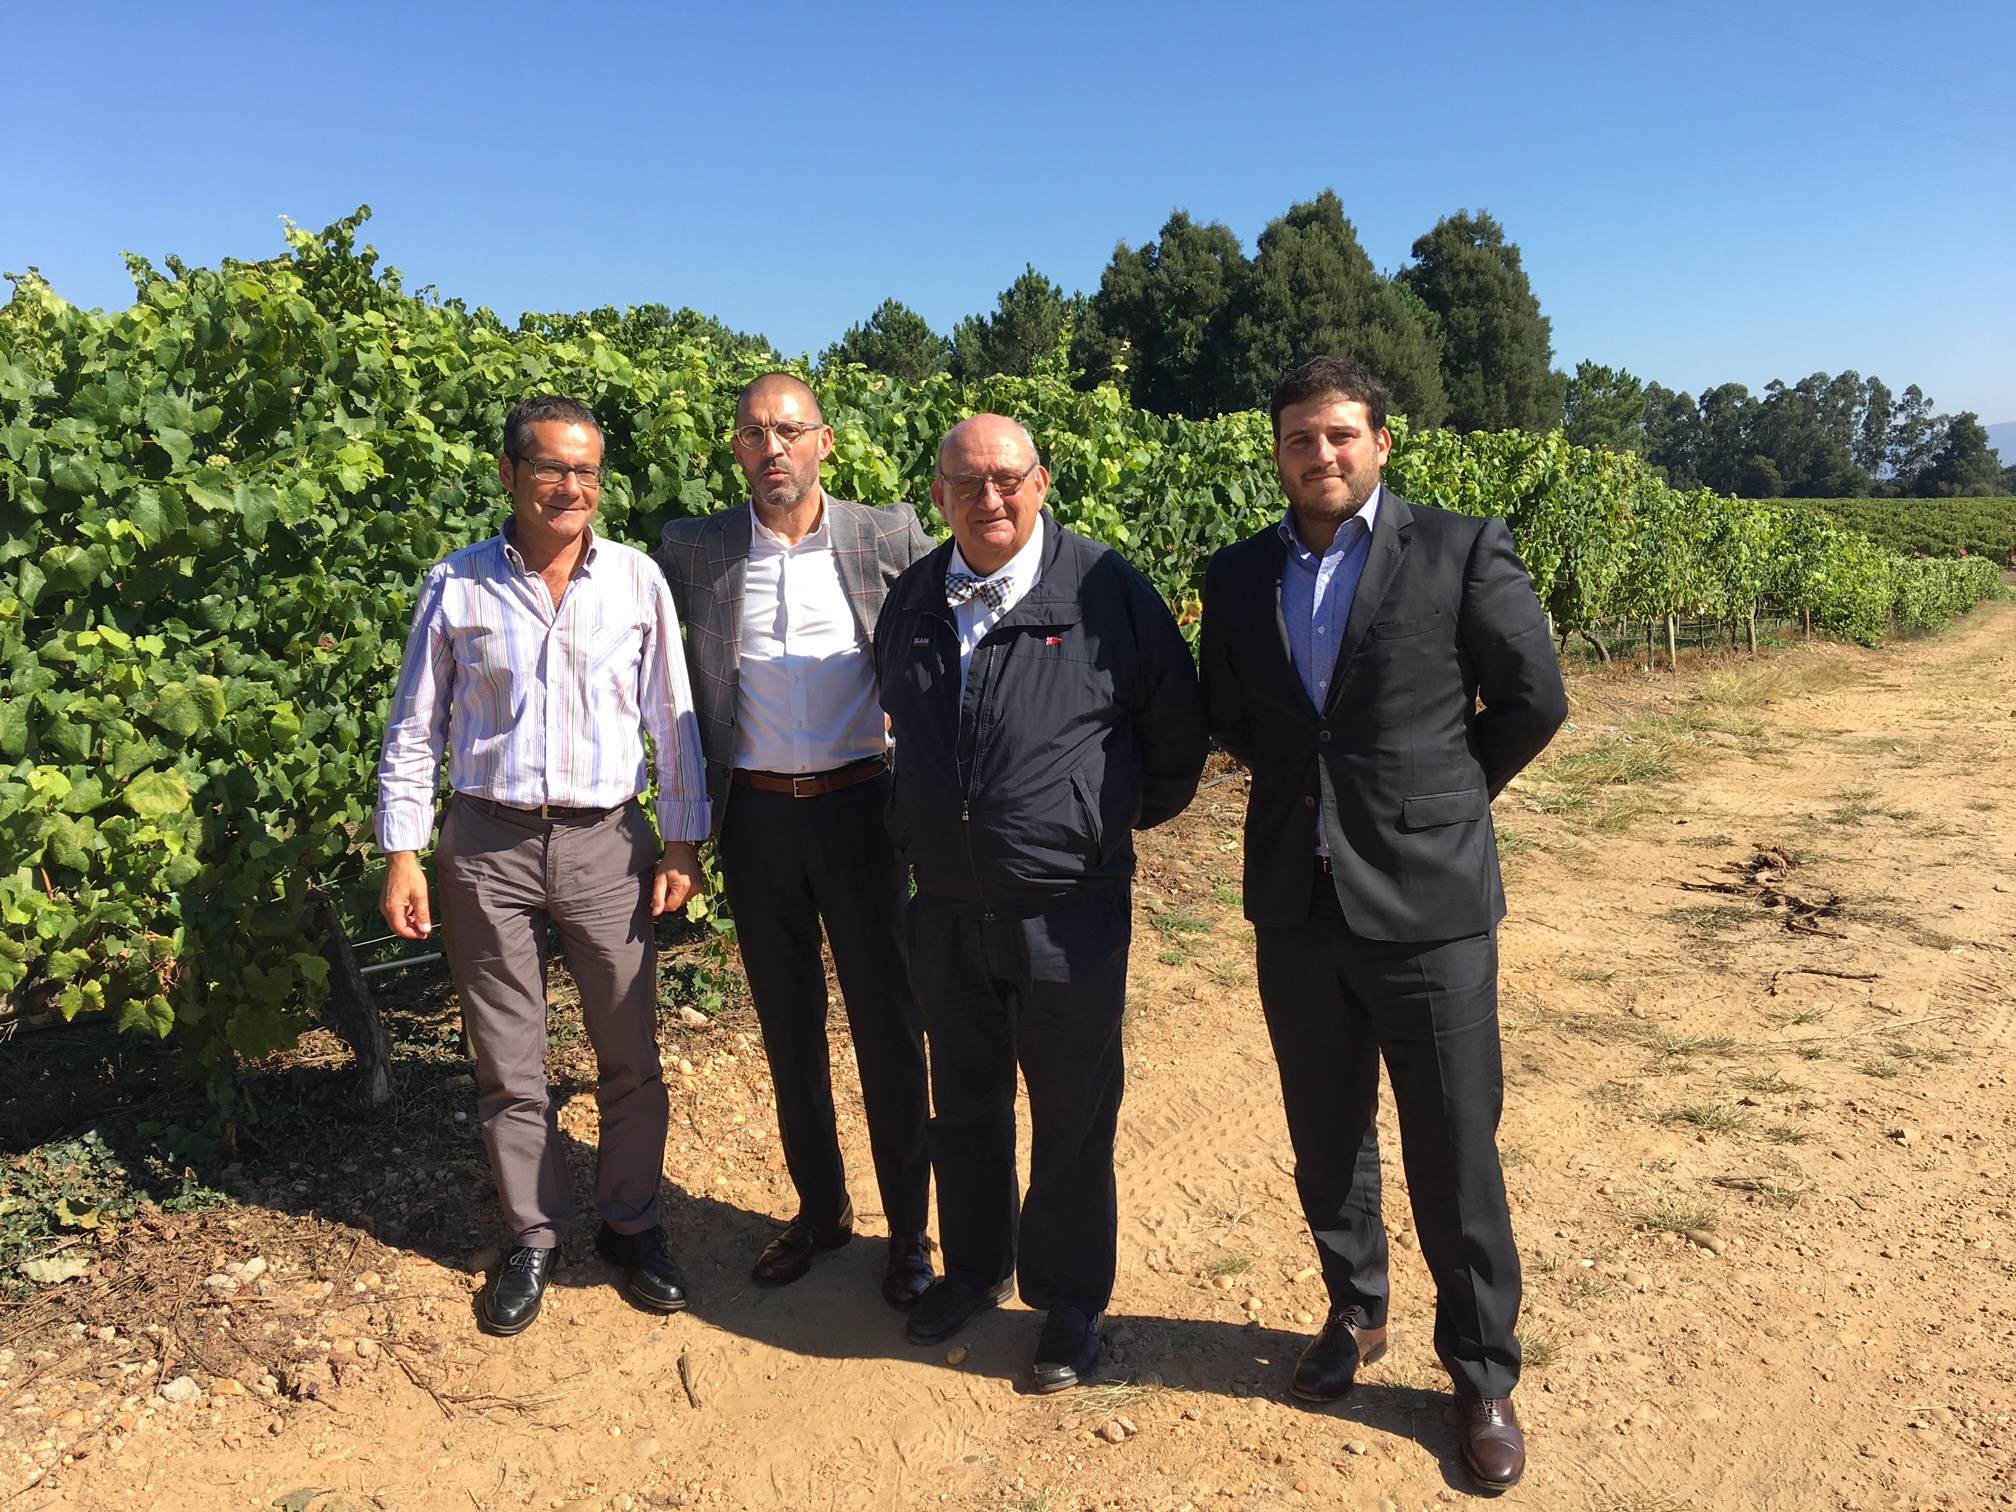 Terras Gauda lidera un innovador proyecto de viticultura sostenible